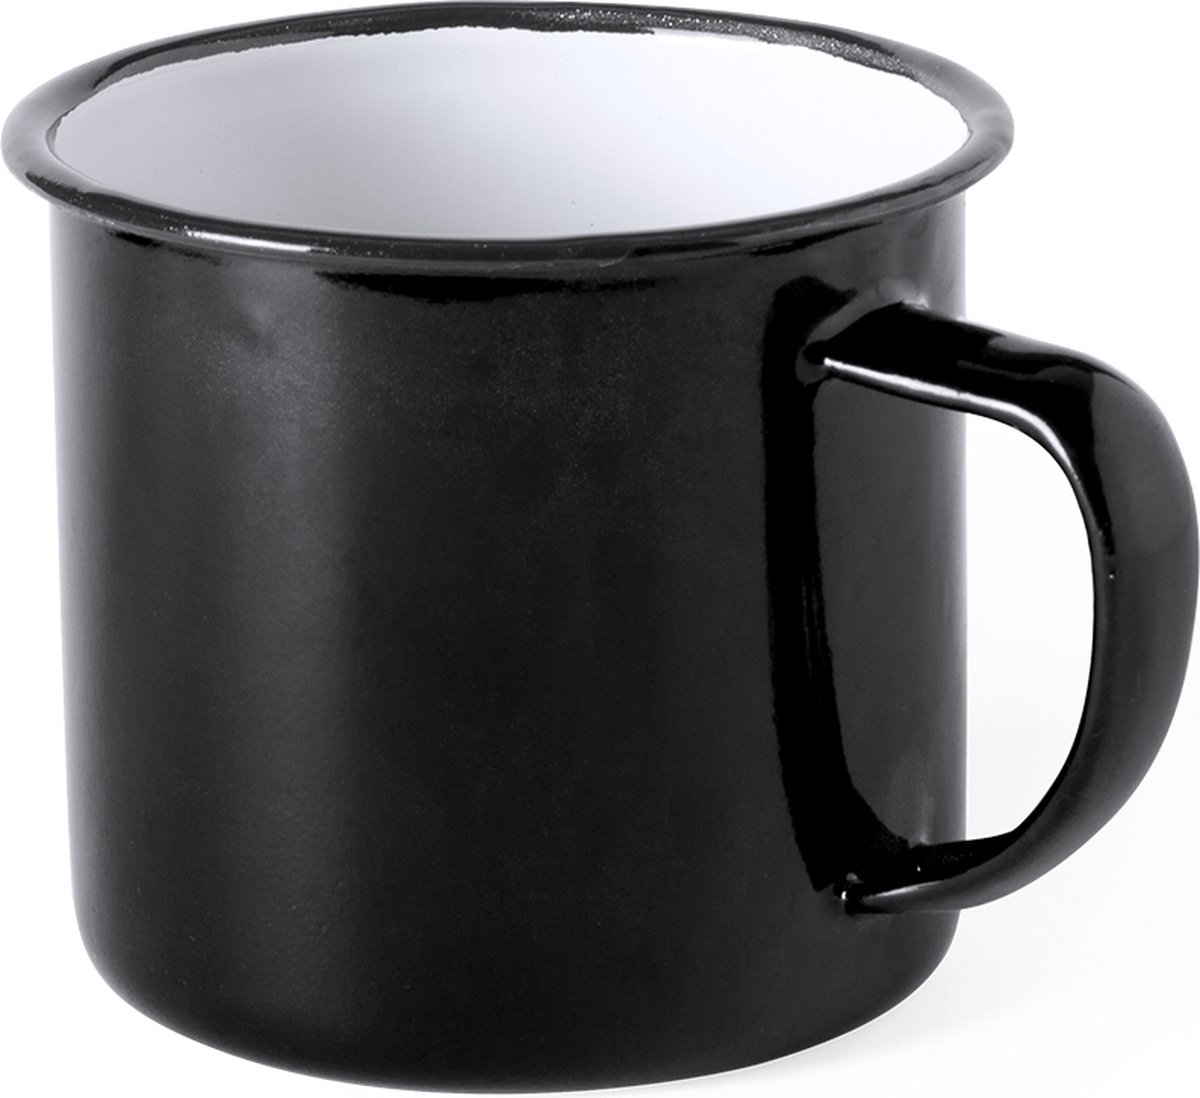 Emaille Mok - Koffiemok - Drinkbeker - Koffiemokken met oor - Retro - 380 ml - Metaal - Zwart - Merkloos